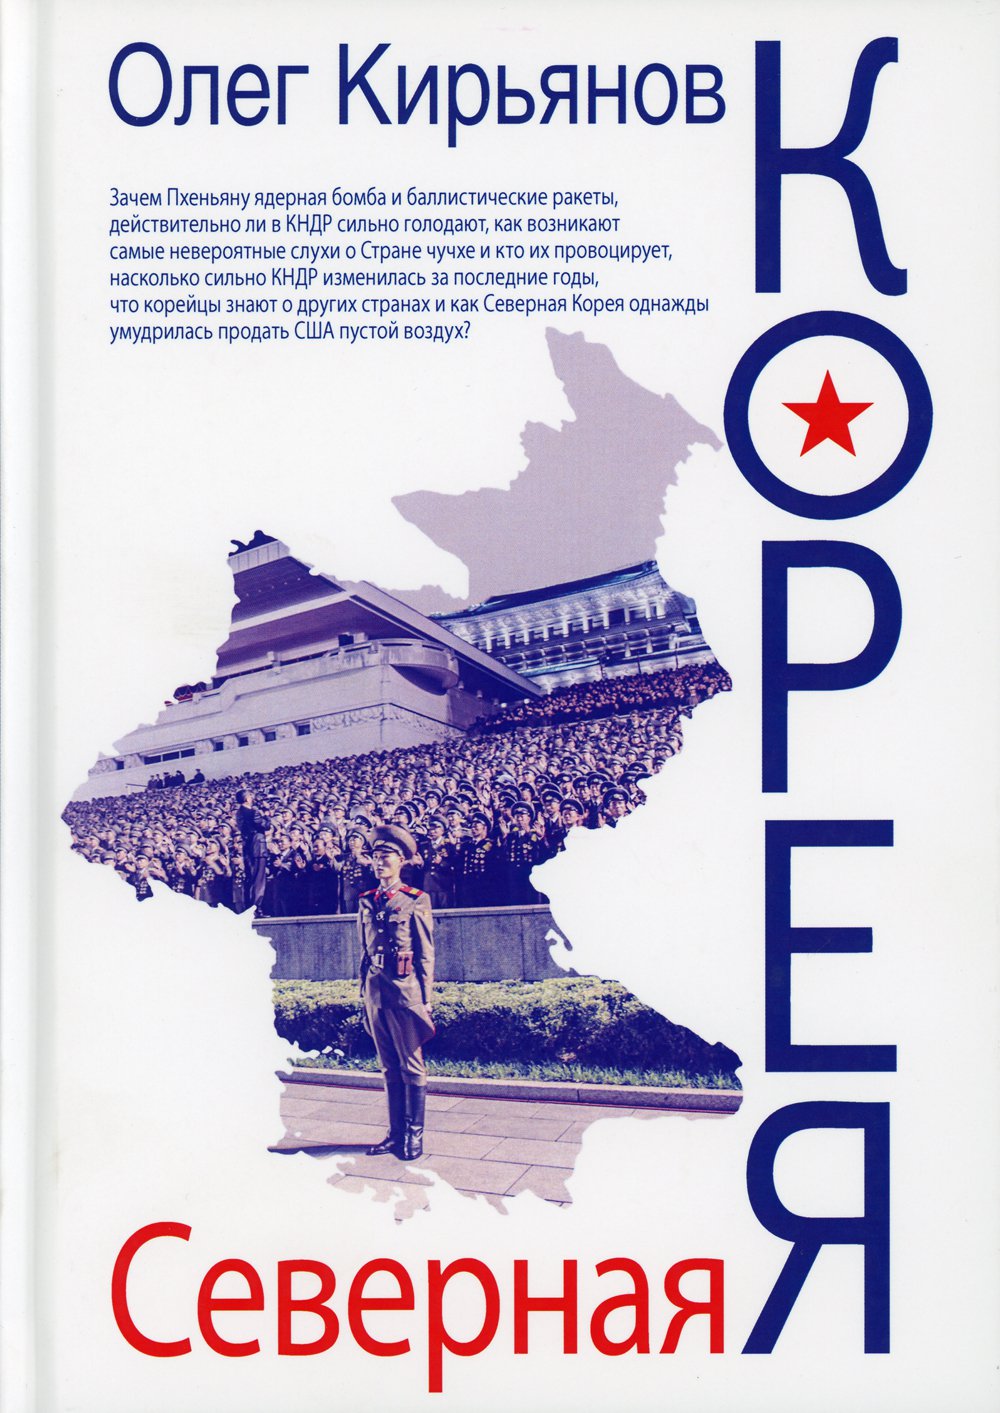 Северная Корея. 2-е изд., испр. Кирьянов О.В.